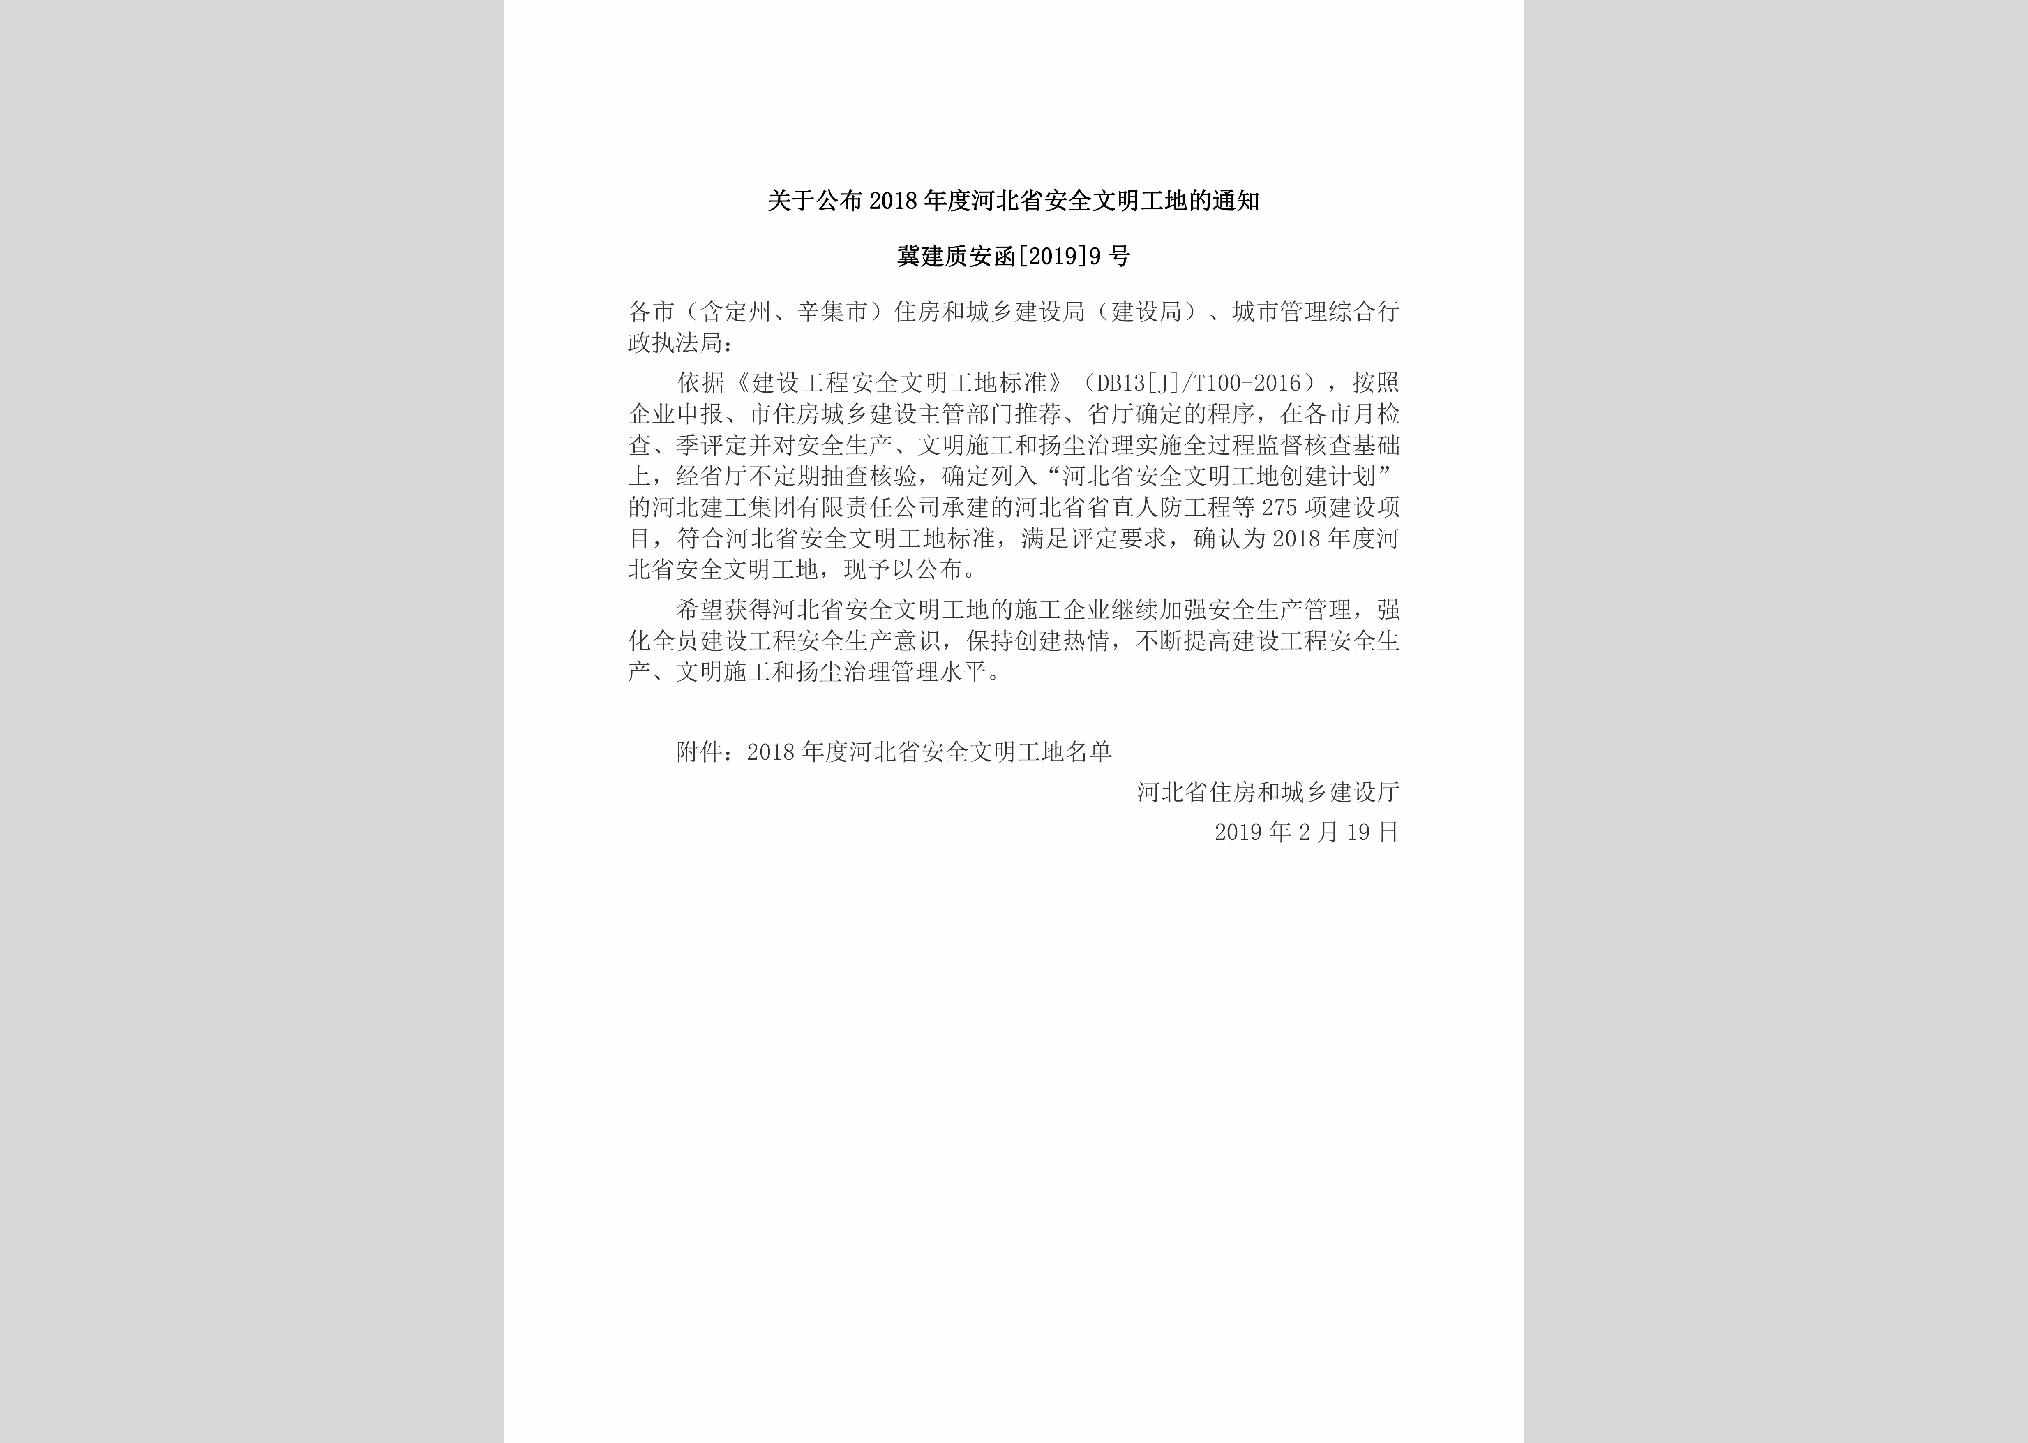 冀建质安函[2019]9号：关于公布2018年度河北省安全文明工地的通知